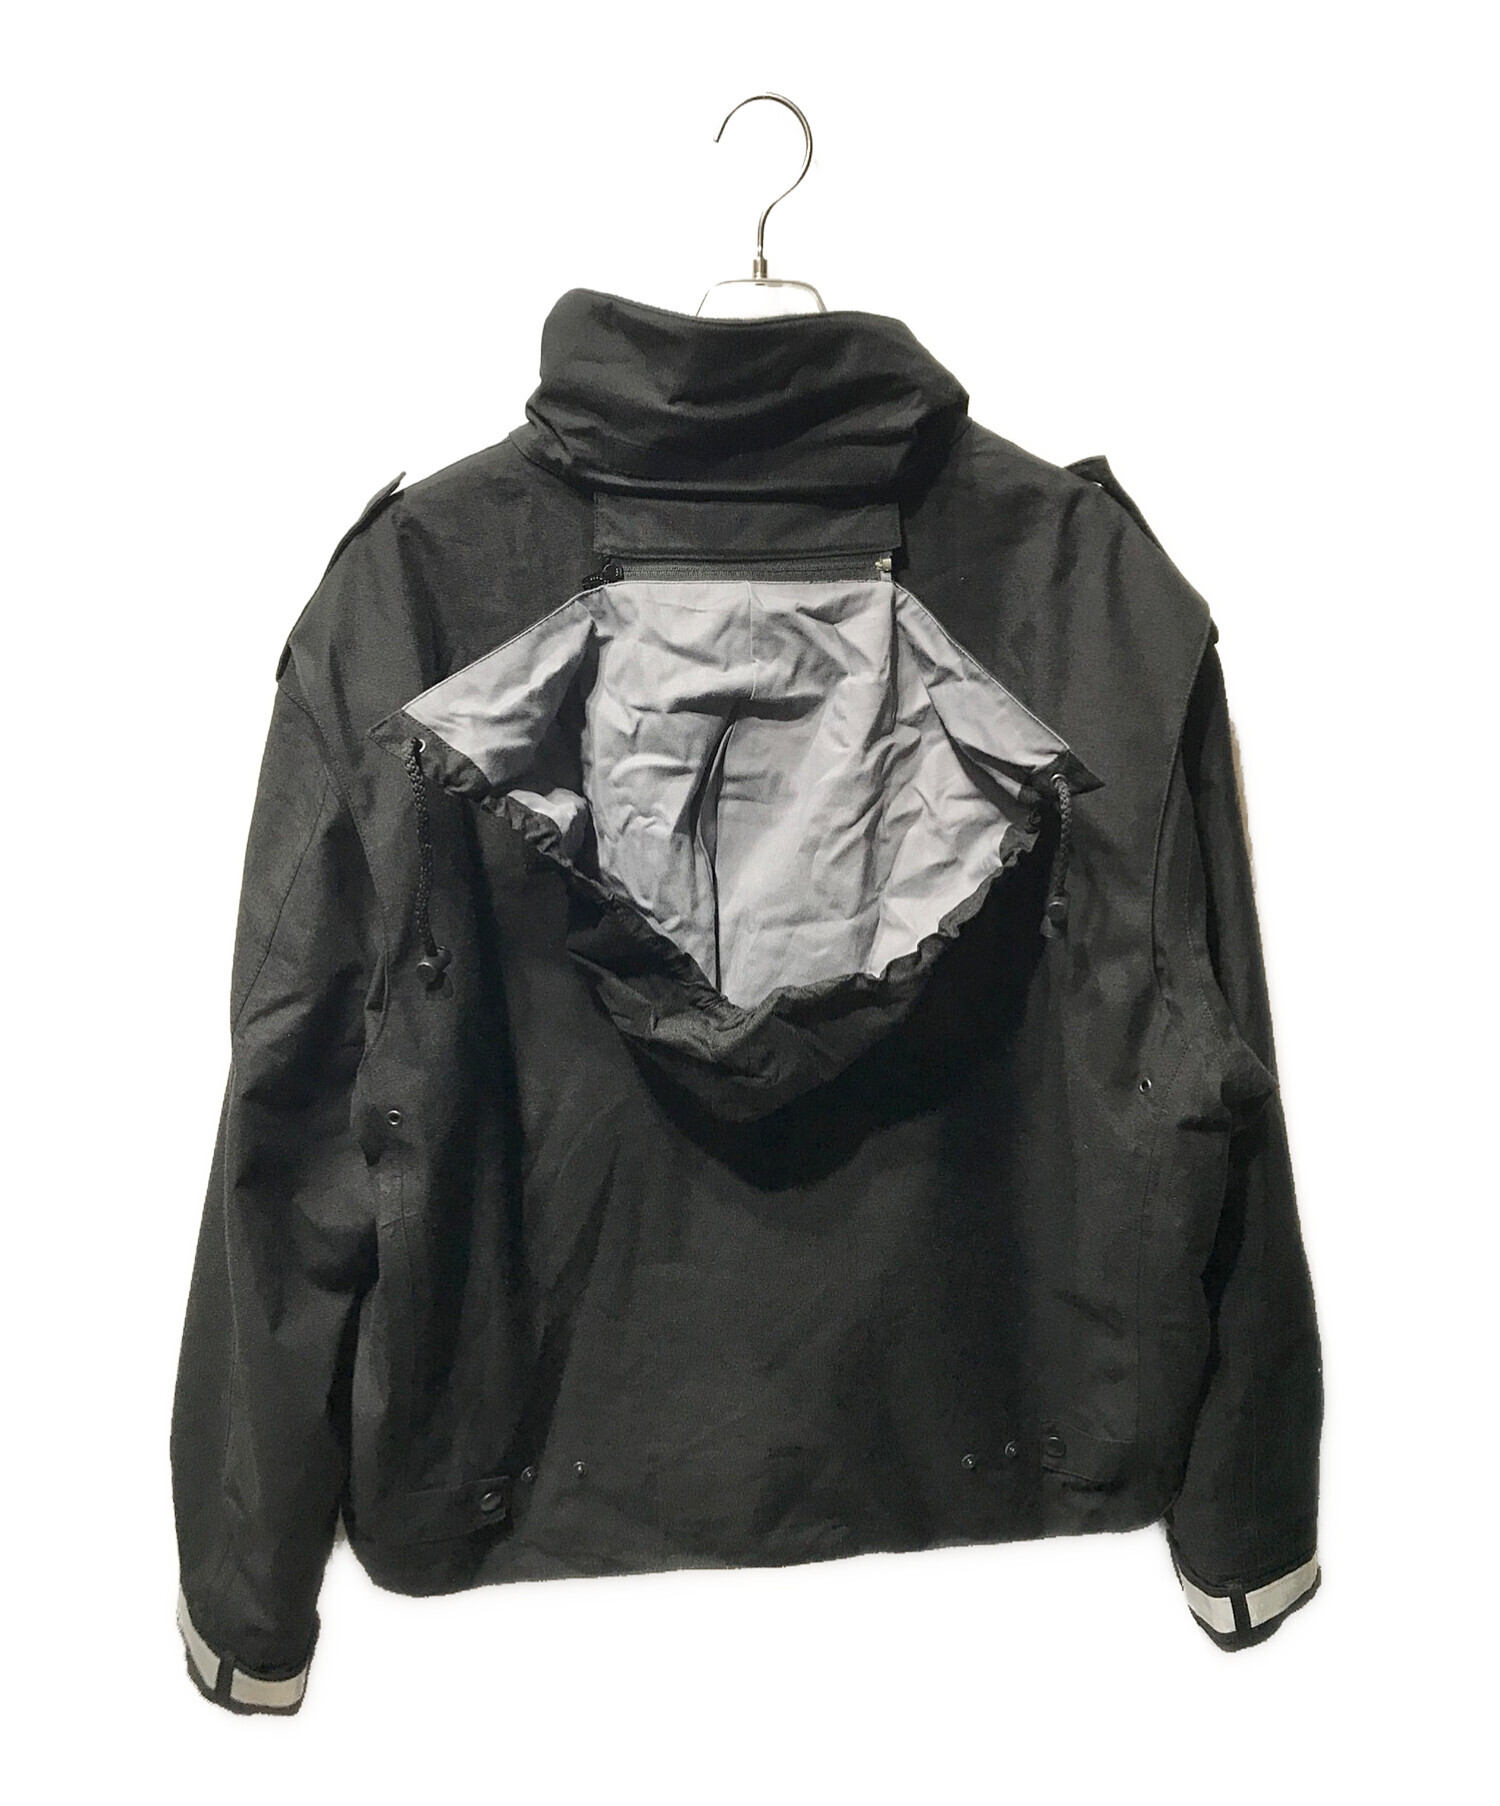 ノーブランド (ノーブランド) ポリスジャケット オランダ警察 ブラック サイズ:XL